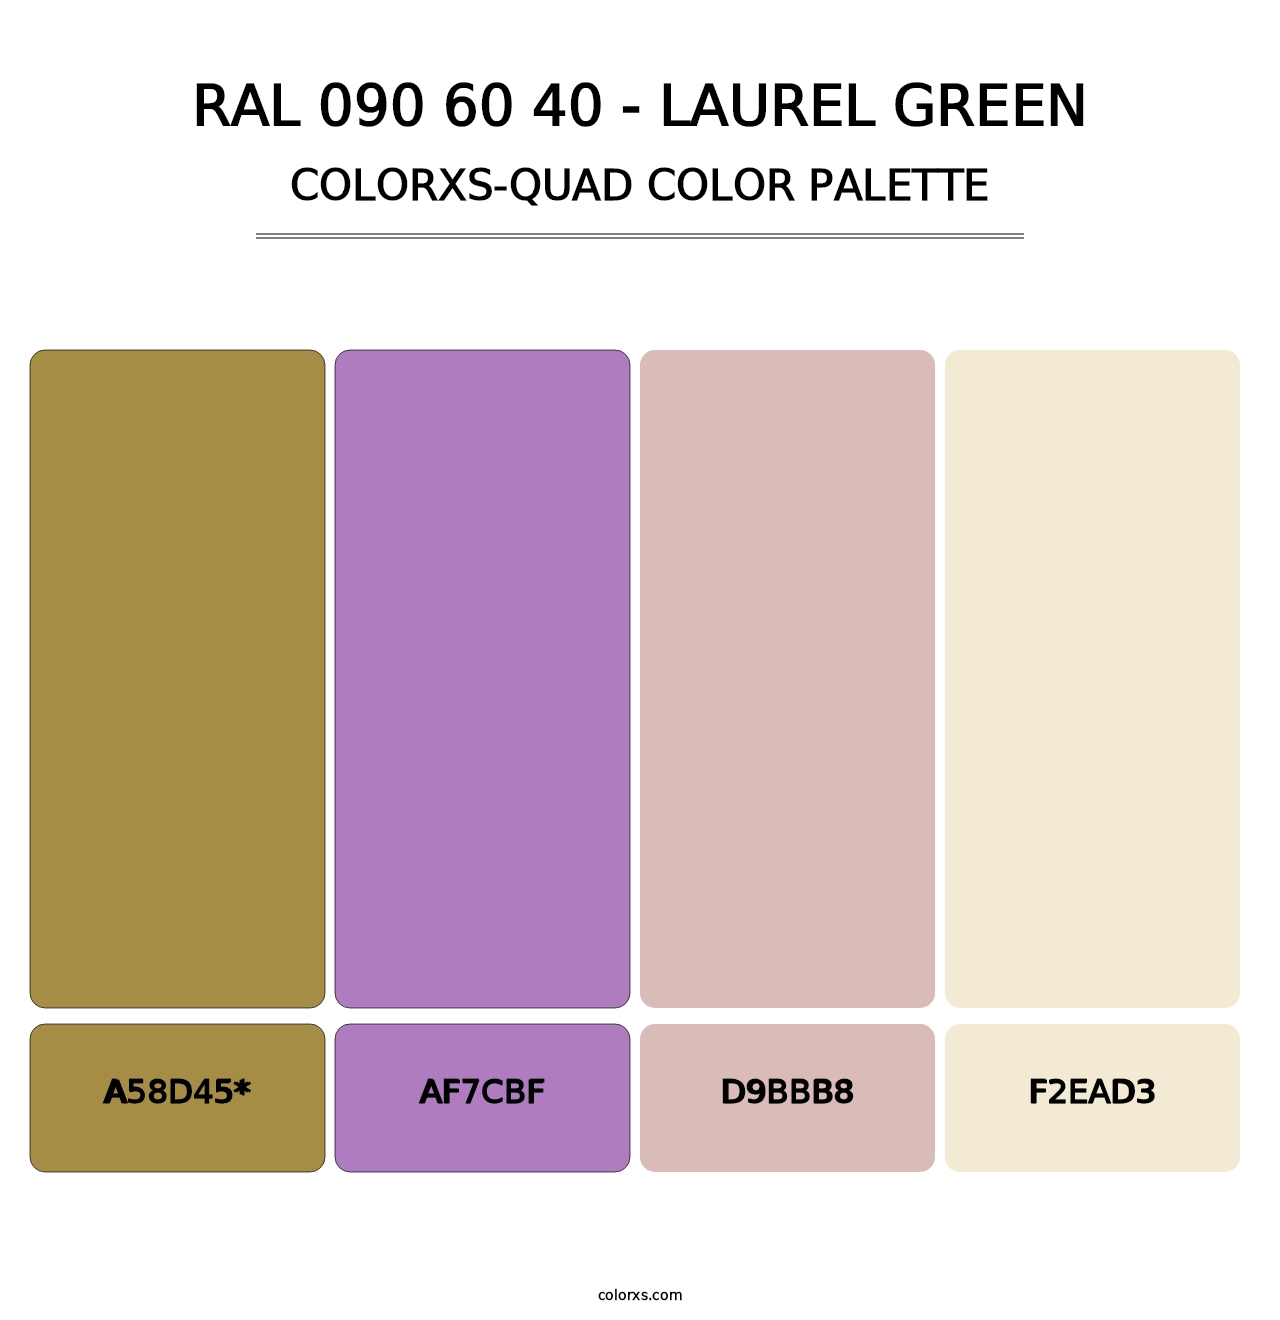 RAL 090 60 40 - Laurel Green - Colorxs Quad Palette